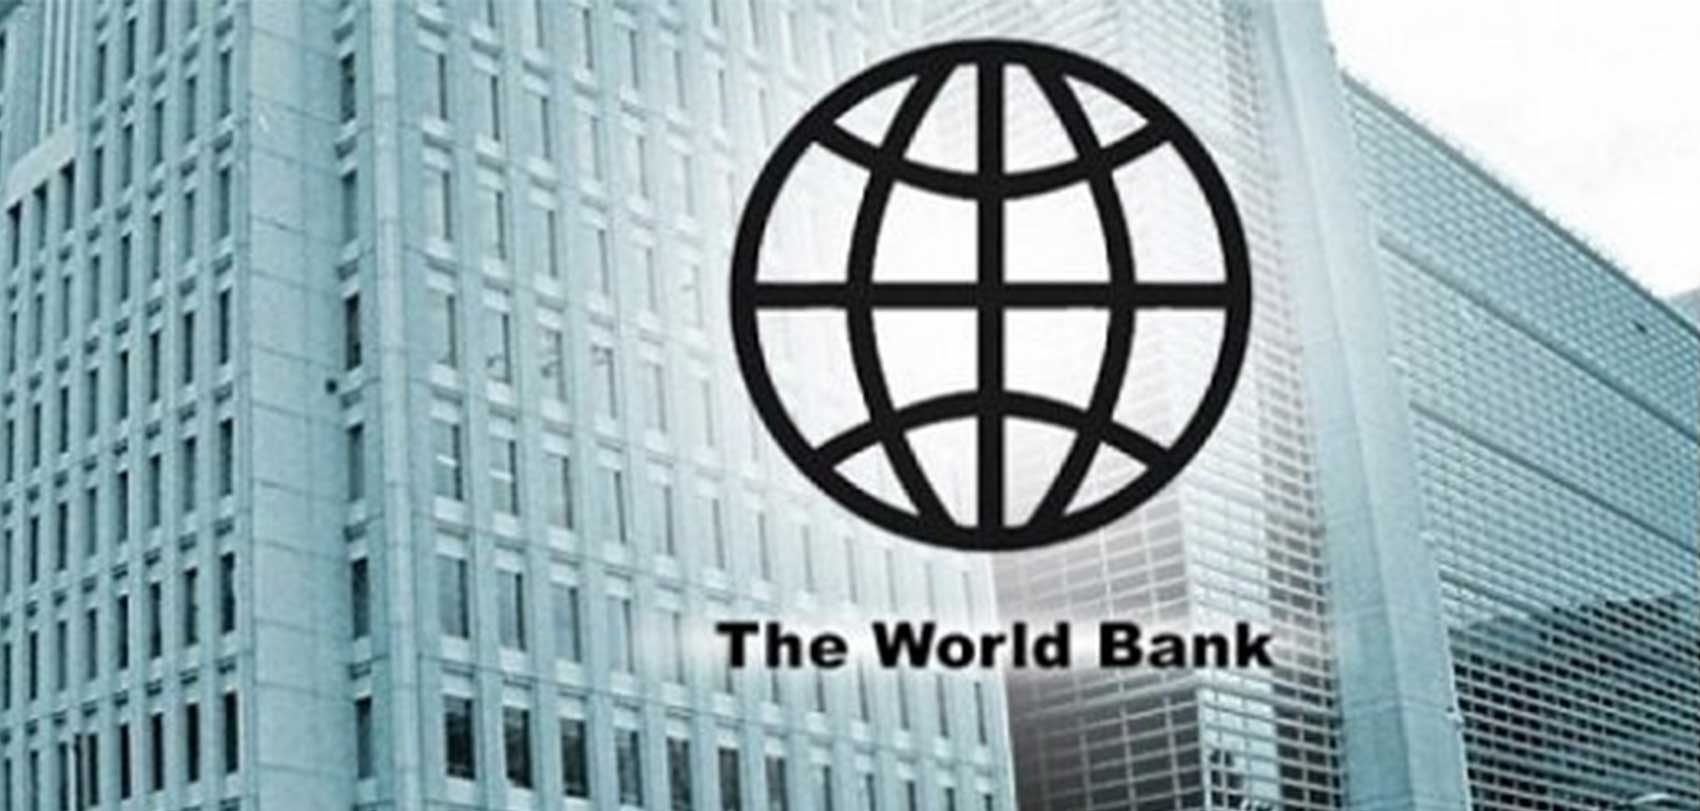 नेपालको वित्तीय क्षेत्रको सुदृढीकरणका लागि विश्वबैंकले ८० मिलियन डलर ऋण दिने